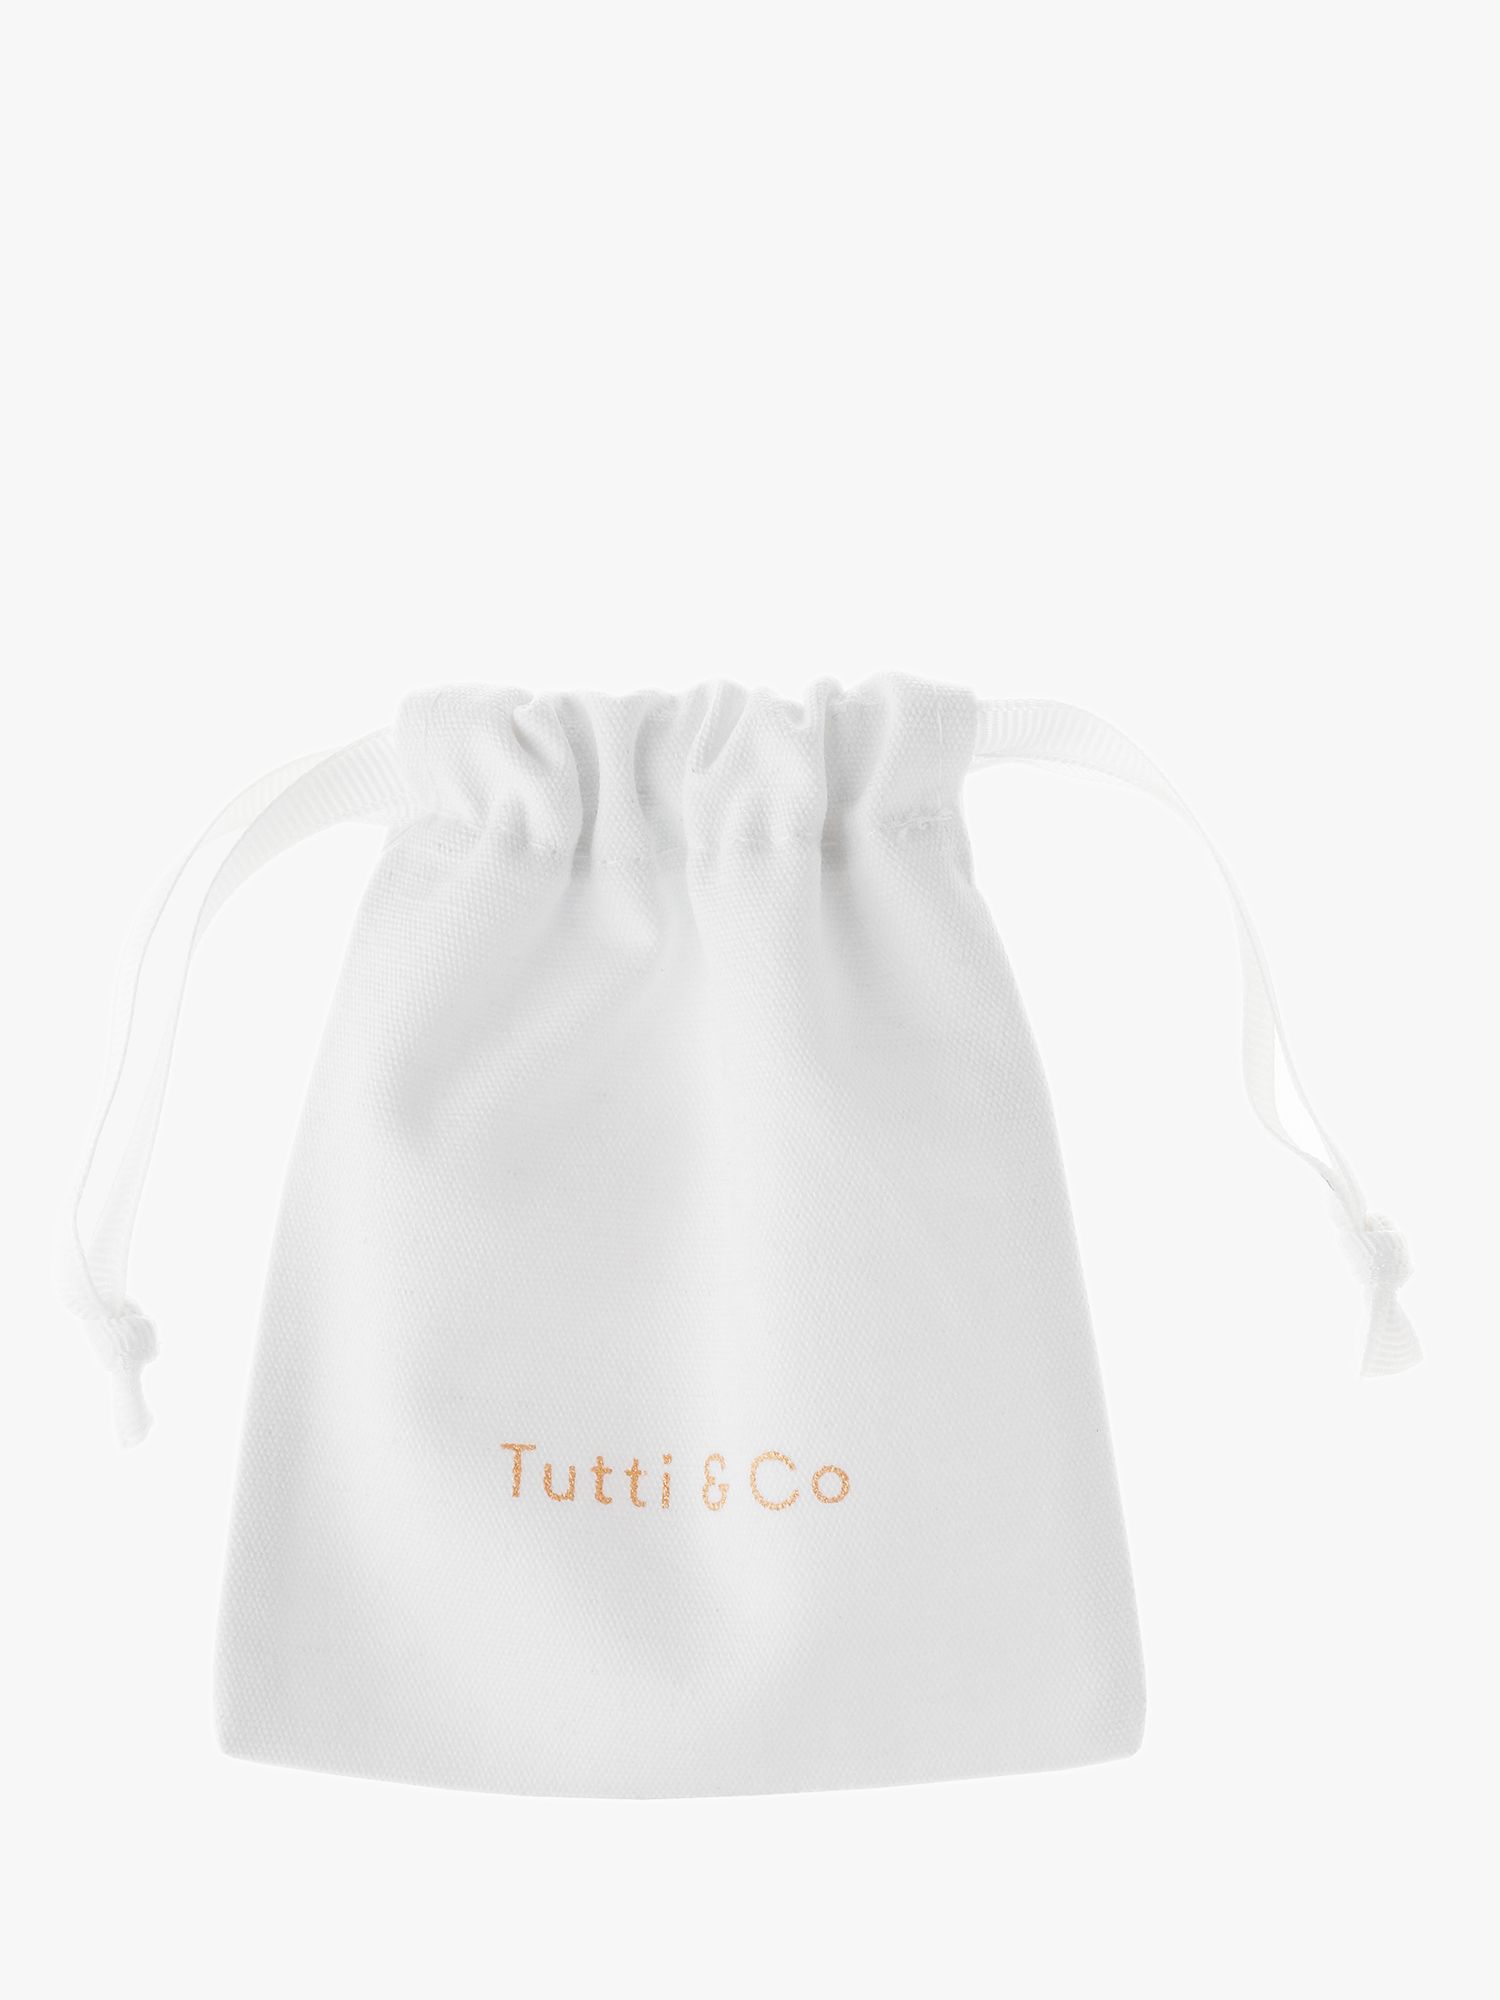 Buy Tutti & Co Praise Textured Twist Hoop Earrings Online at johnlewis.com